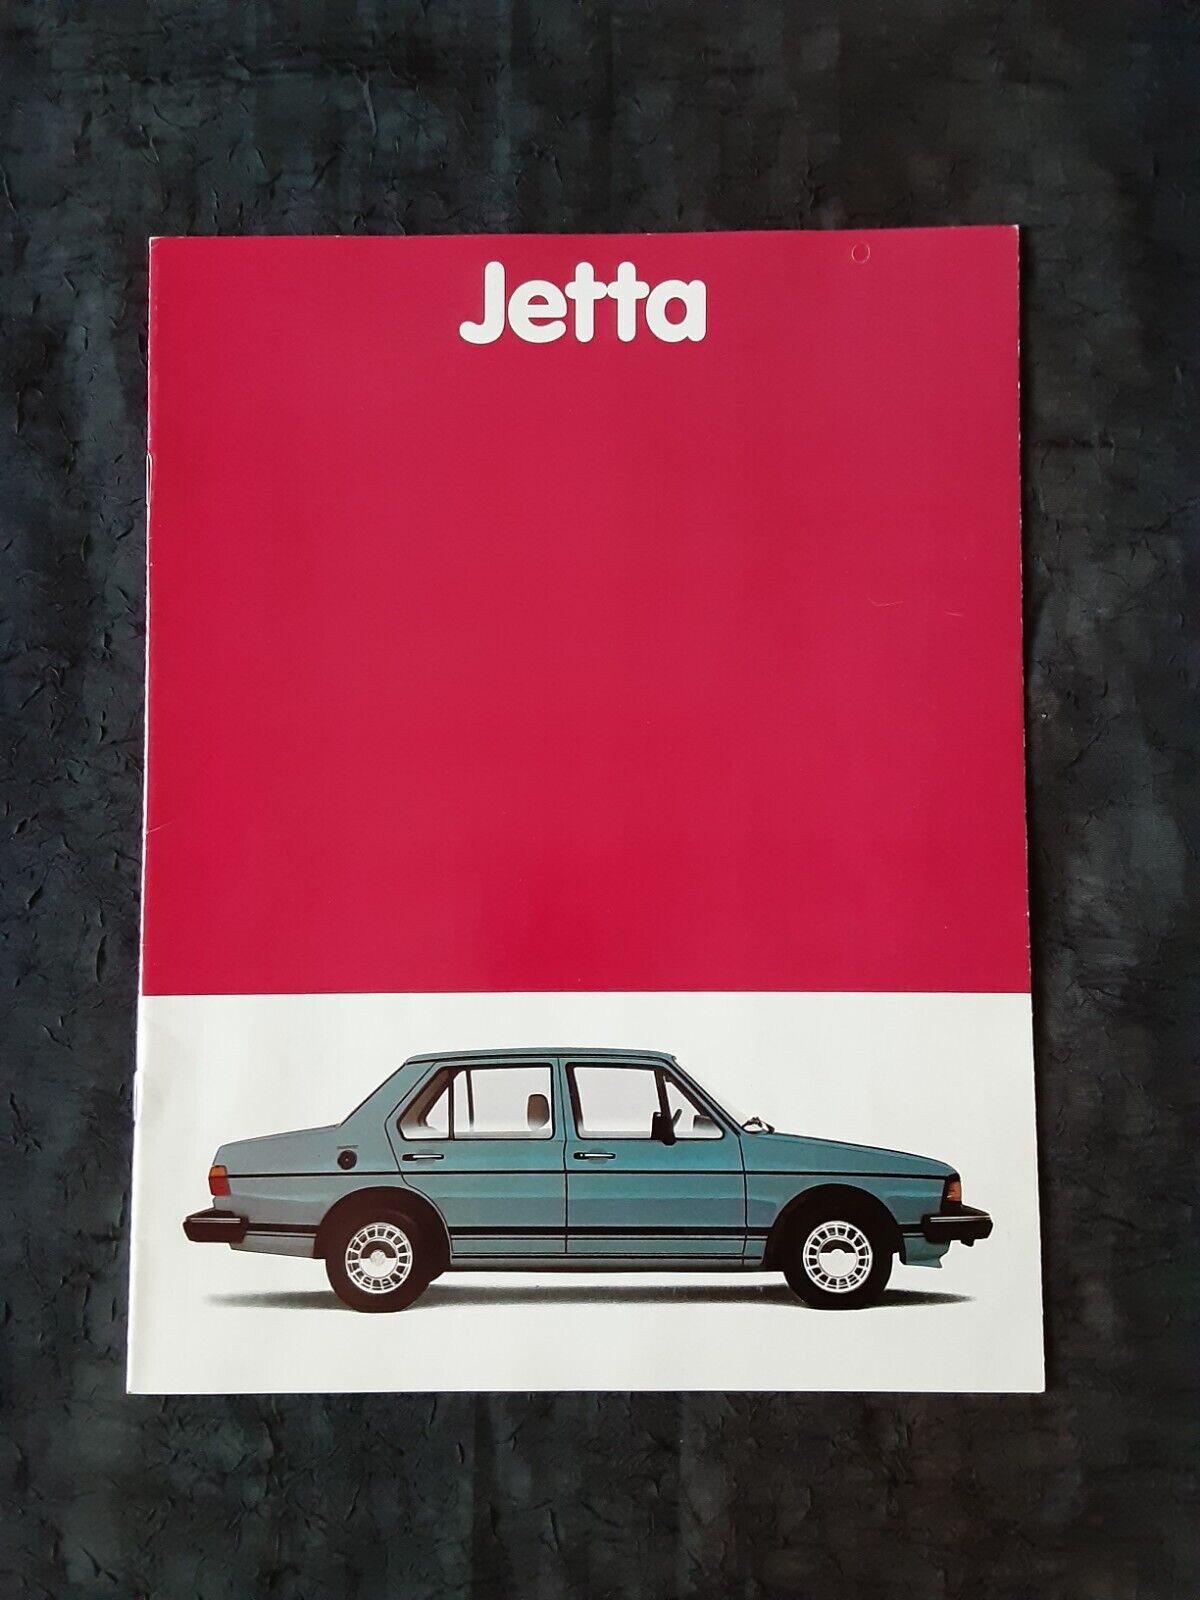 1981 Volkswagen Jetta Original Car Dealer Sales Brochure 13 Pages